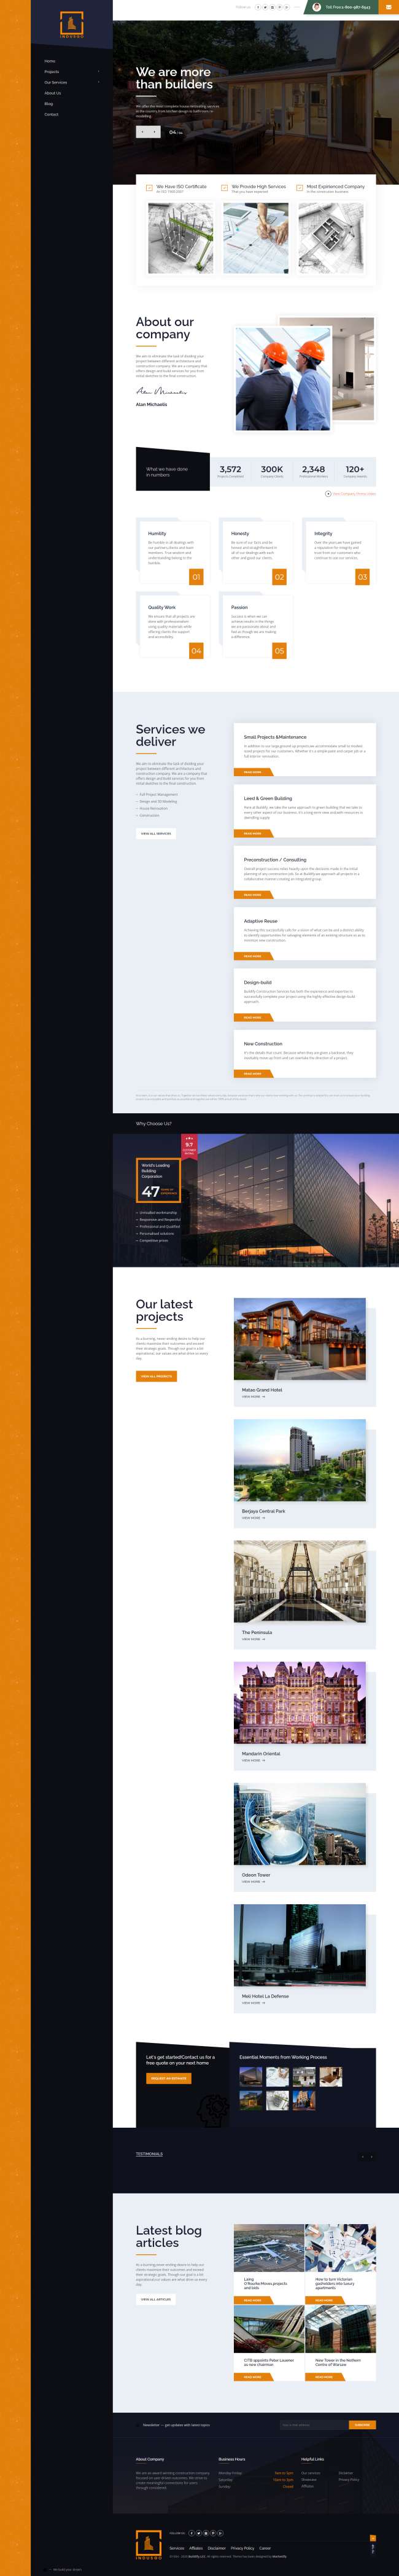 企业网站设计，经典网站前端页面模板样式